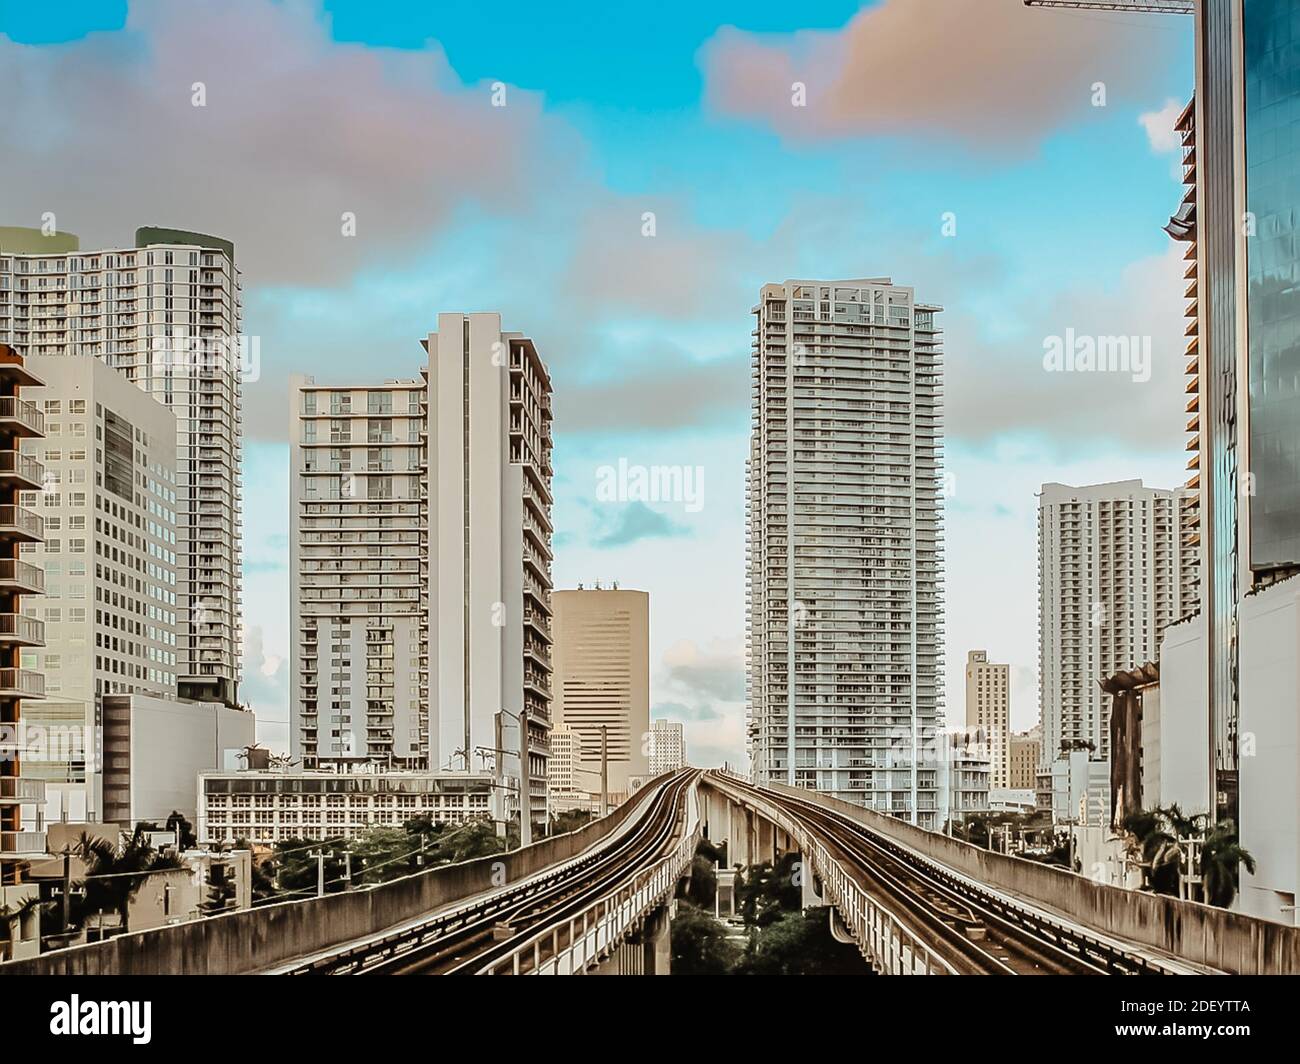 Blick auf das Finanzviertel, Wolkenkratzer und metrorail in Miami, Florida, USA.Moderne öffentliche Verkehrsmittel.Schnelle Weg rund um Downtown Miami.E Stockfoto